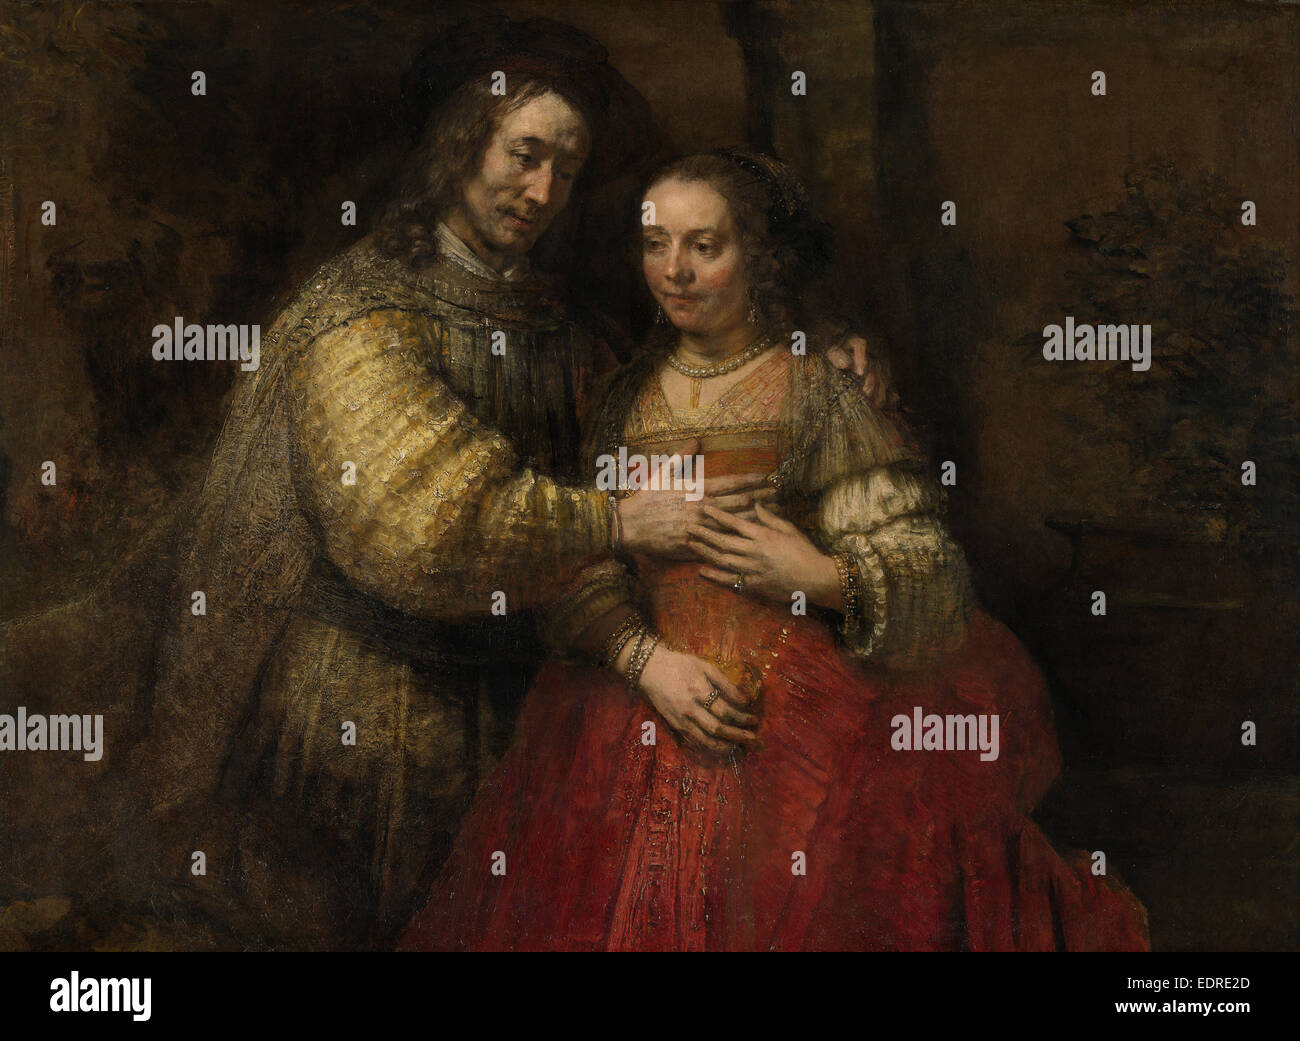 Isacco e Rebecca, noto come la Sposa ebraica, Rembrandt Harmensz. van Rijn, c. 1665 - c. 1669 Foto Stock